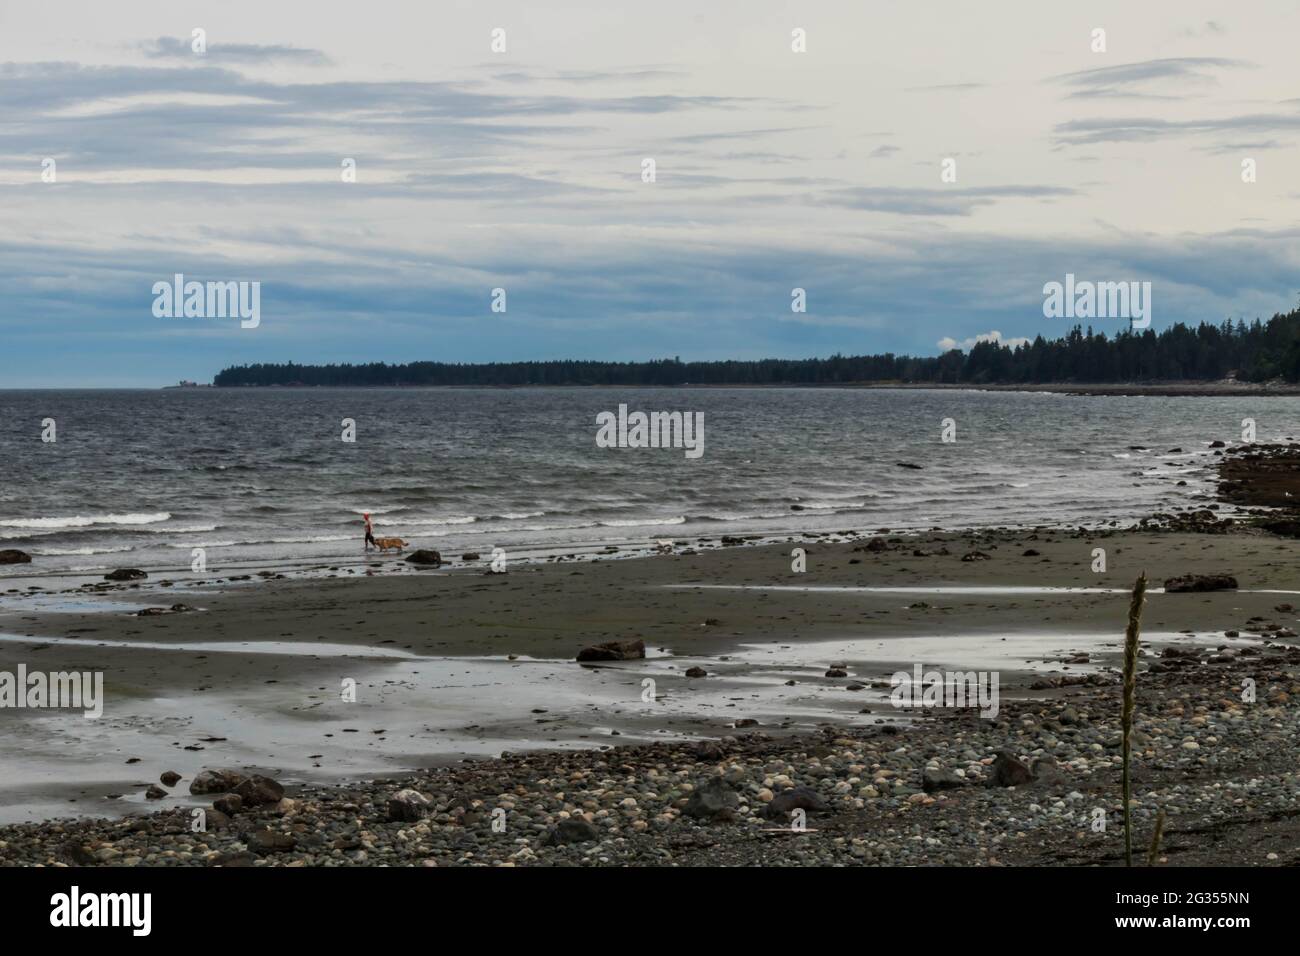 Spiaggia costiera della British Columbia con bassa marea, giorno ventoso con punto di terra in lontananza, persona con cane a piedi sulla spiaggia. Foto Stock